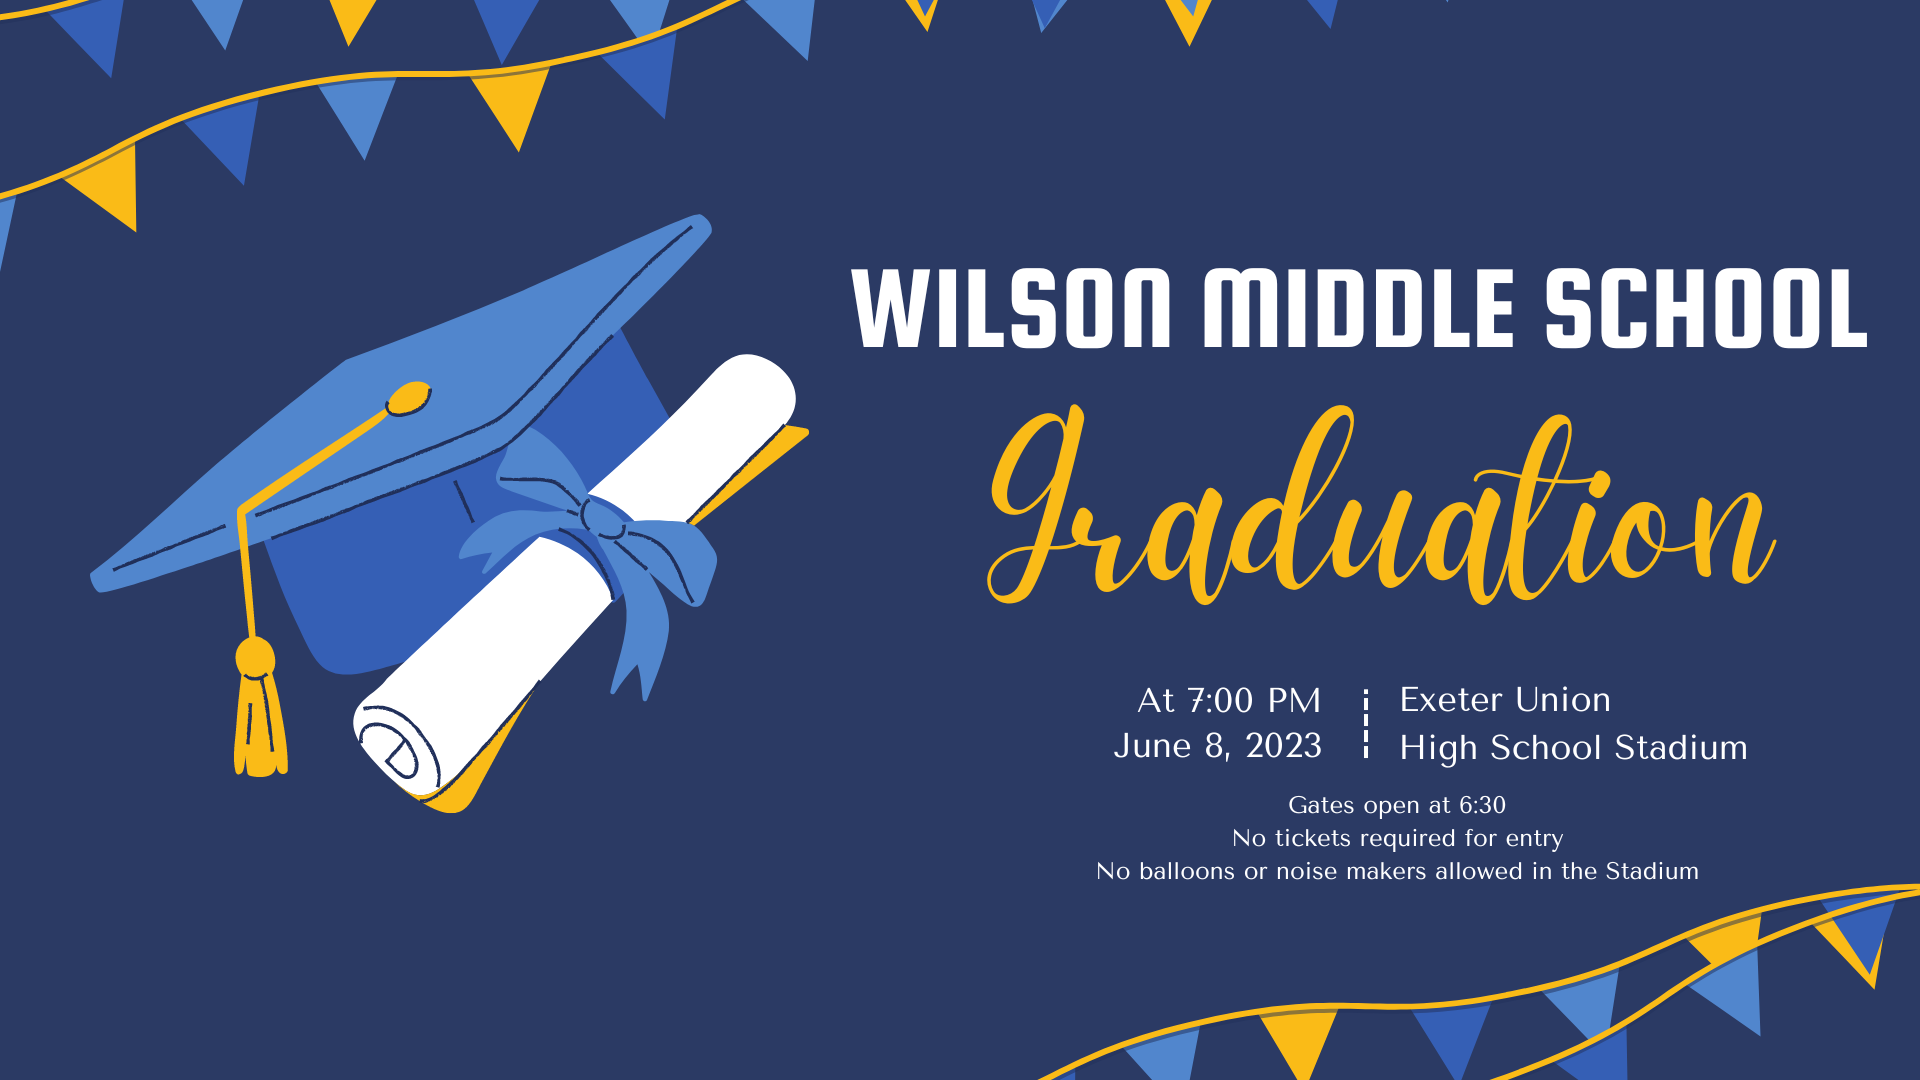 8th grade Graduation invitation